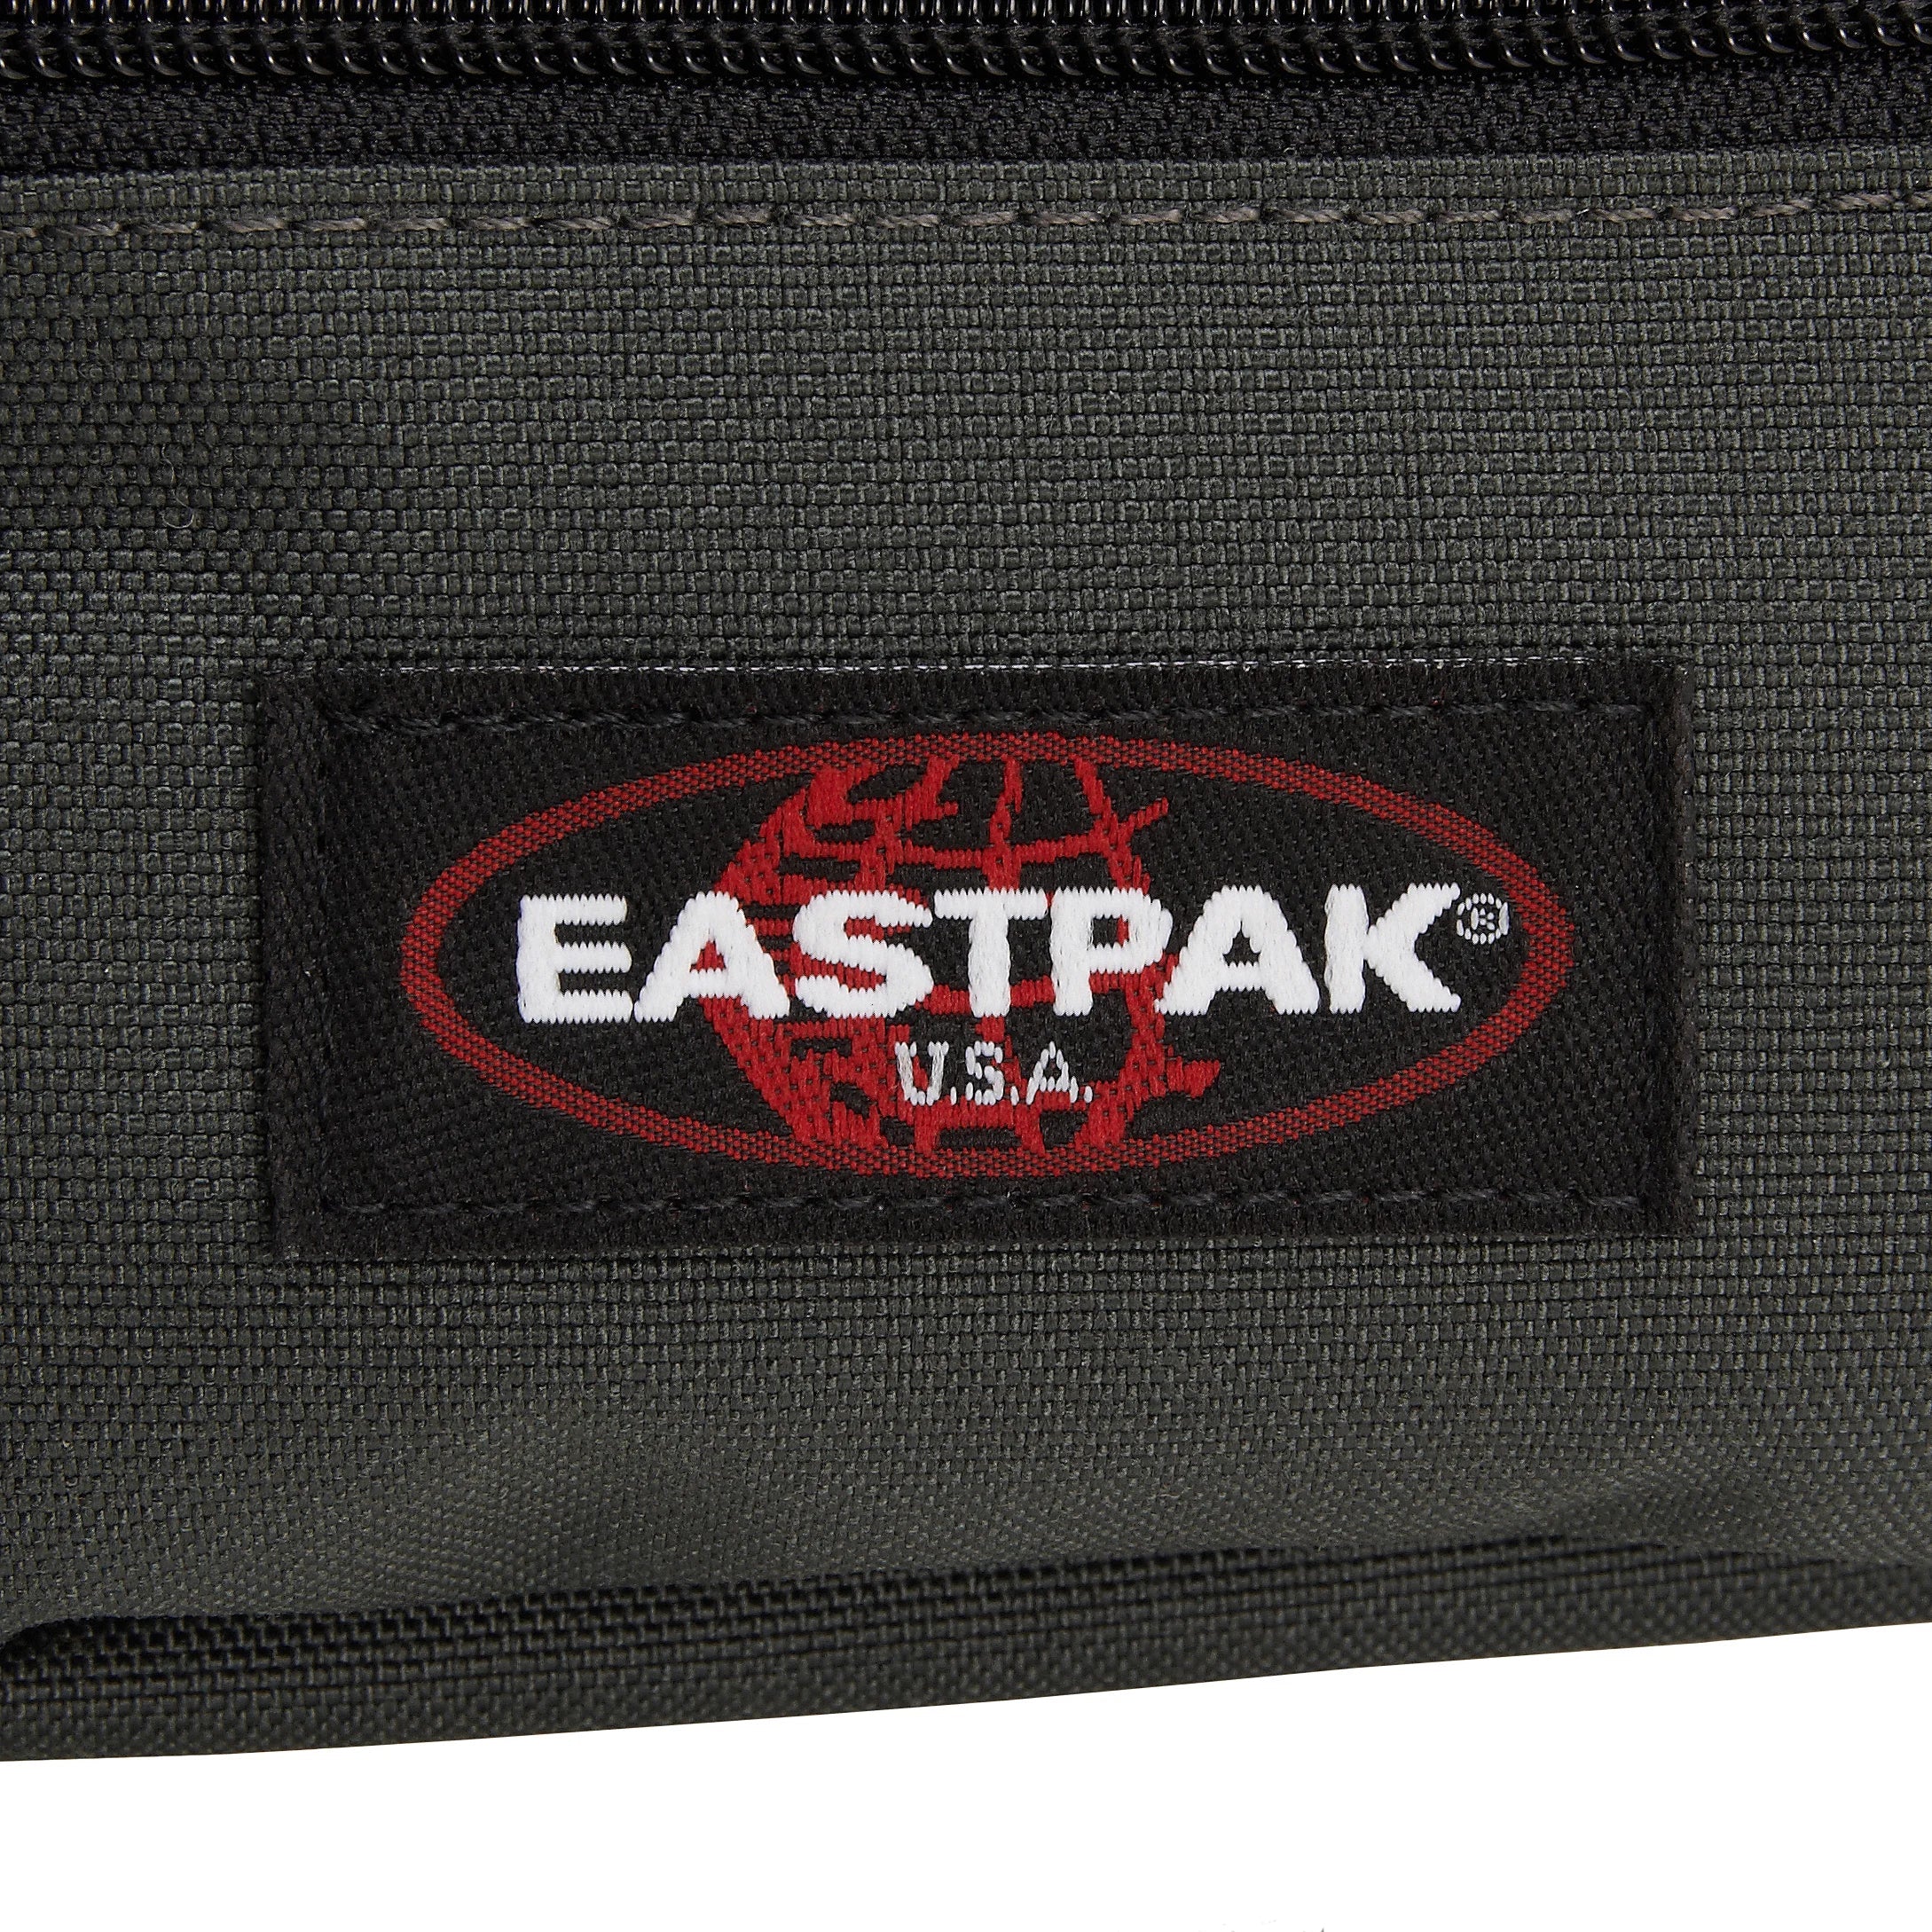 Eastpak Authentic Doggy Bag Belt Bag 25 cm - Sailor Red